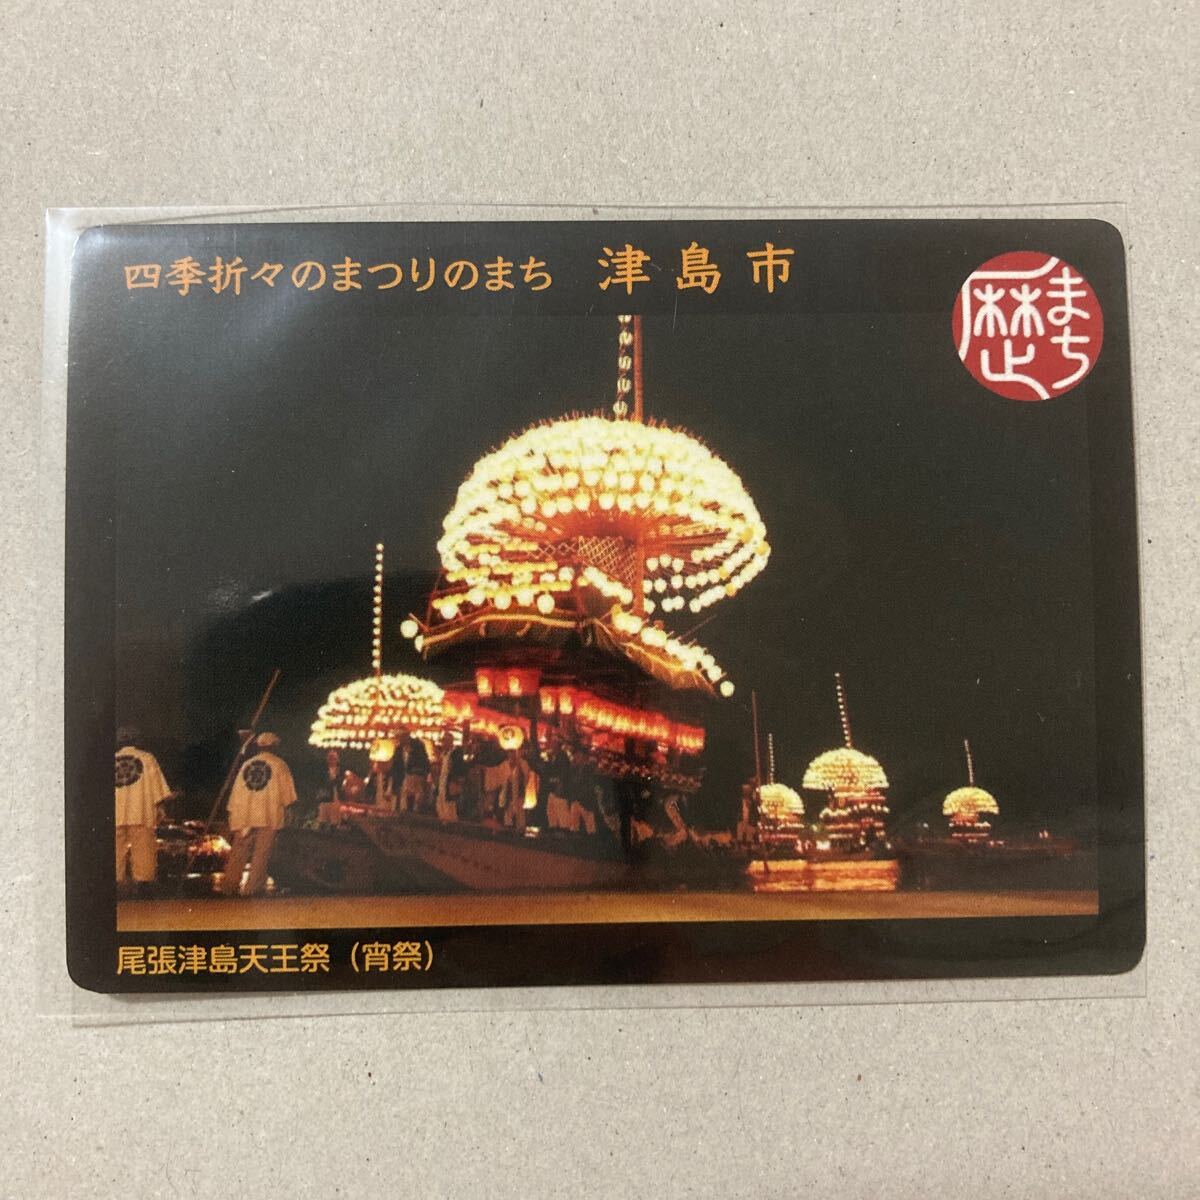 トレカスリーブ収納品 歴史まちづくりカード 歴まちカード 愛知県 津島市の画像1